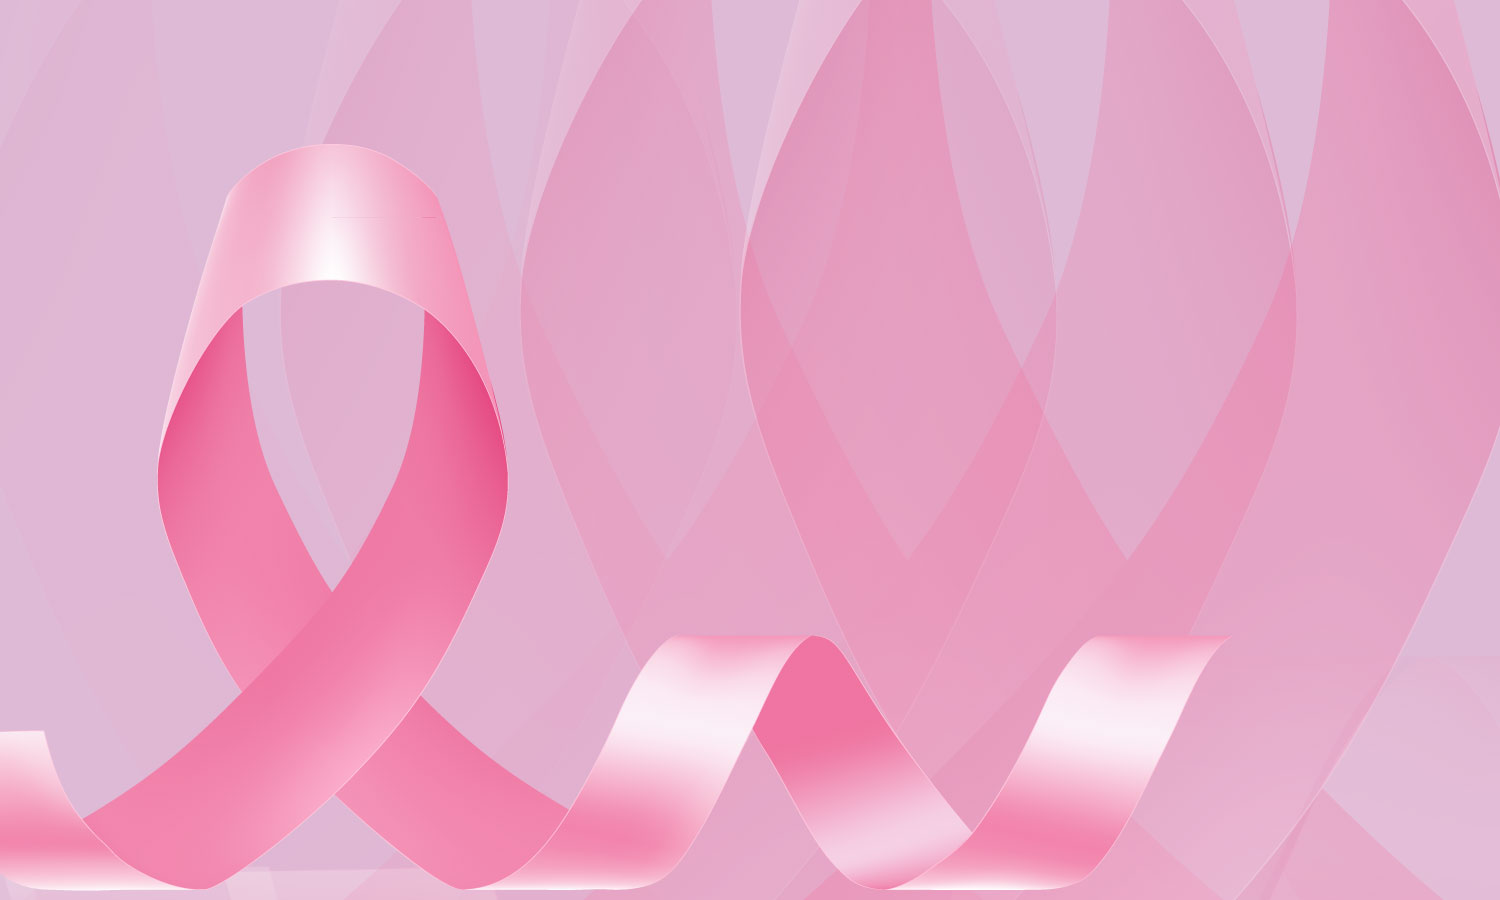 Mes Rosa - Mes de lucha contra el cáncer de mama